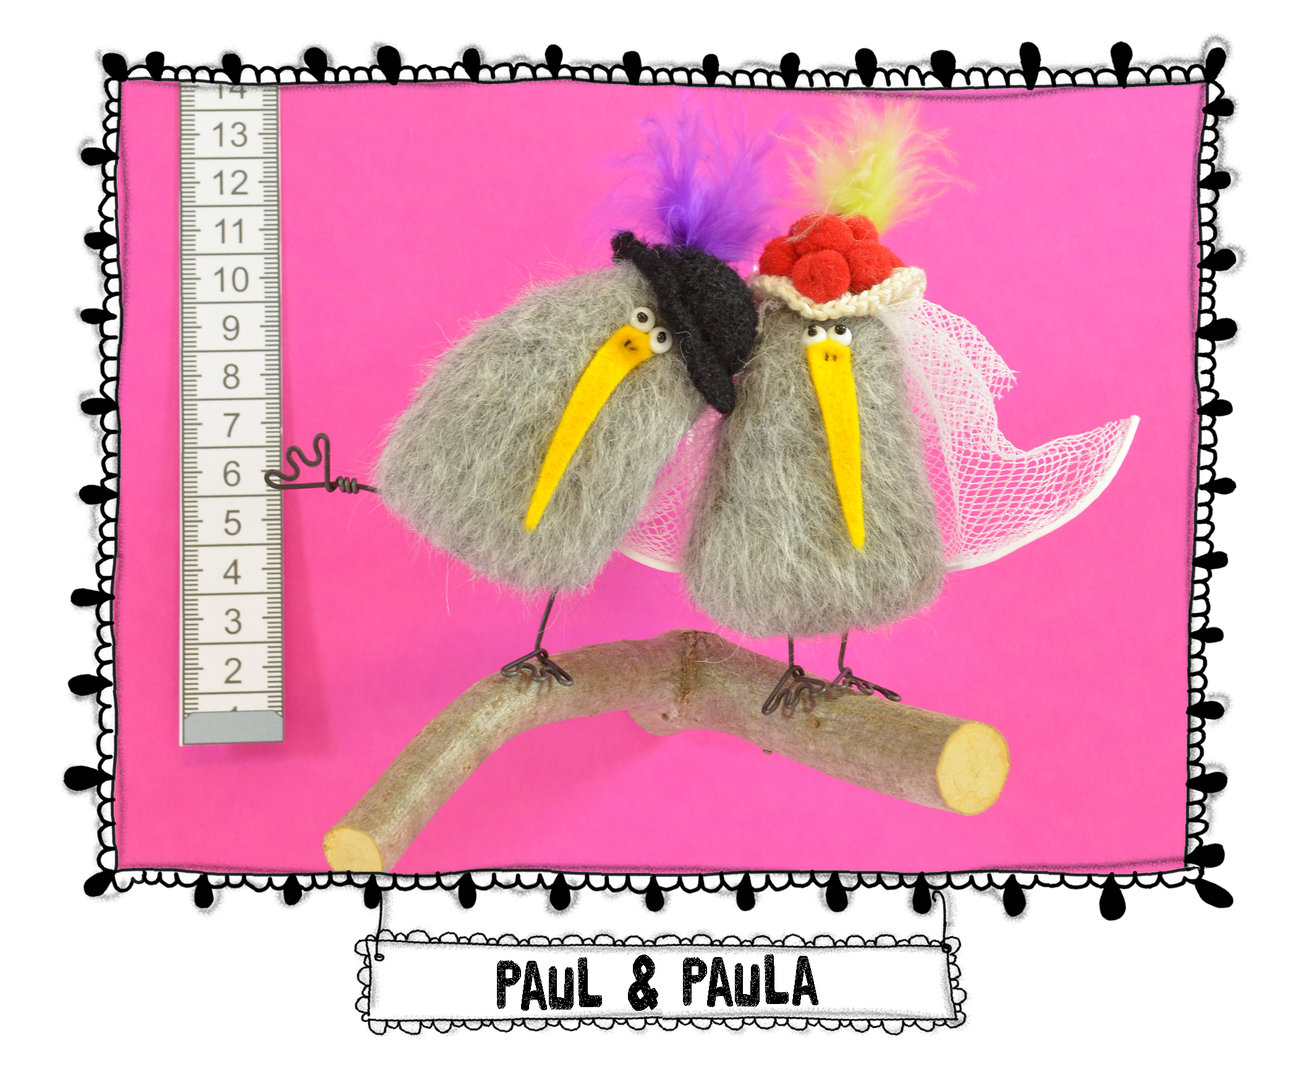 Adler-Hochzeitspaar Paul und Paula